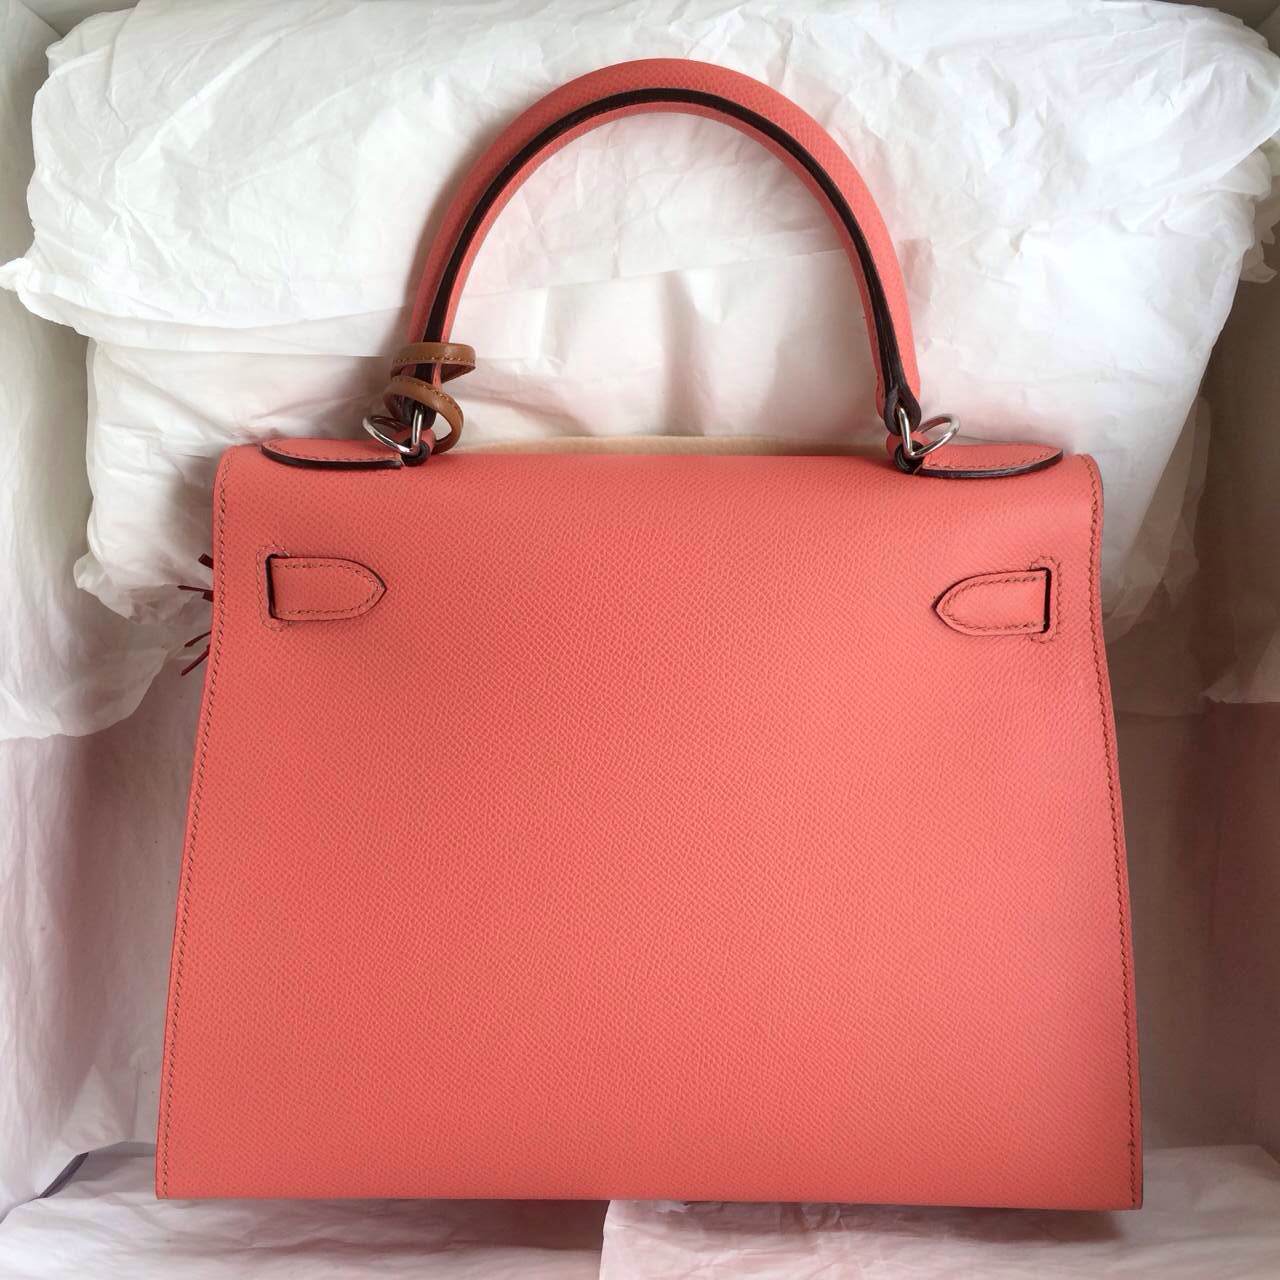 Hermes Kelly Bag Sellier 28cm i5 Flamingo Color France Epsom Leather — Hermes Crocodile Birkin Bag